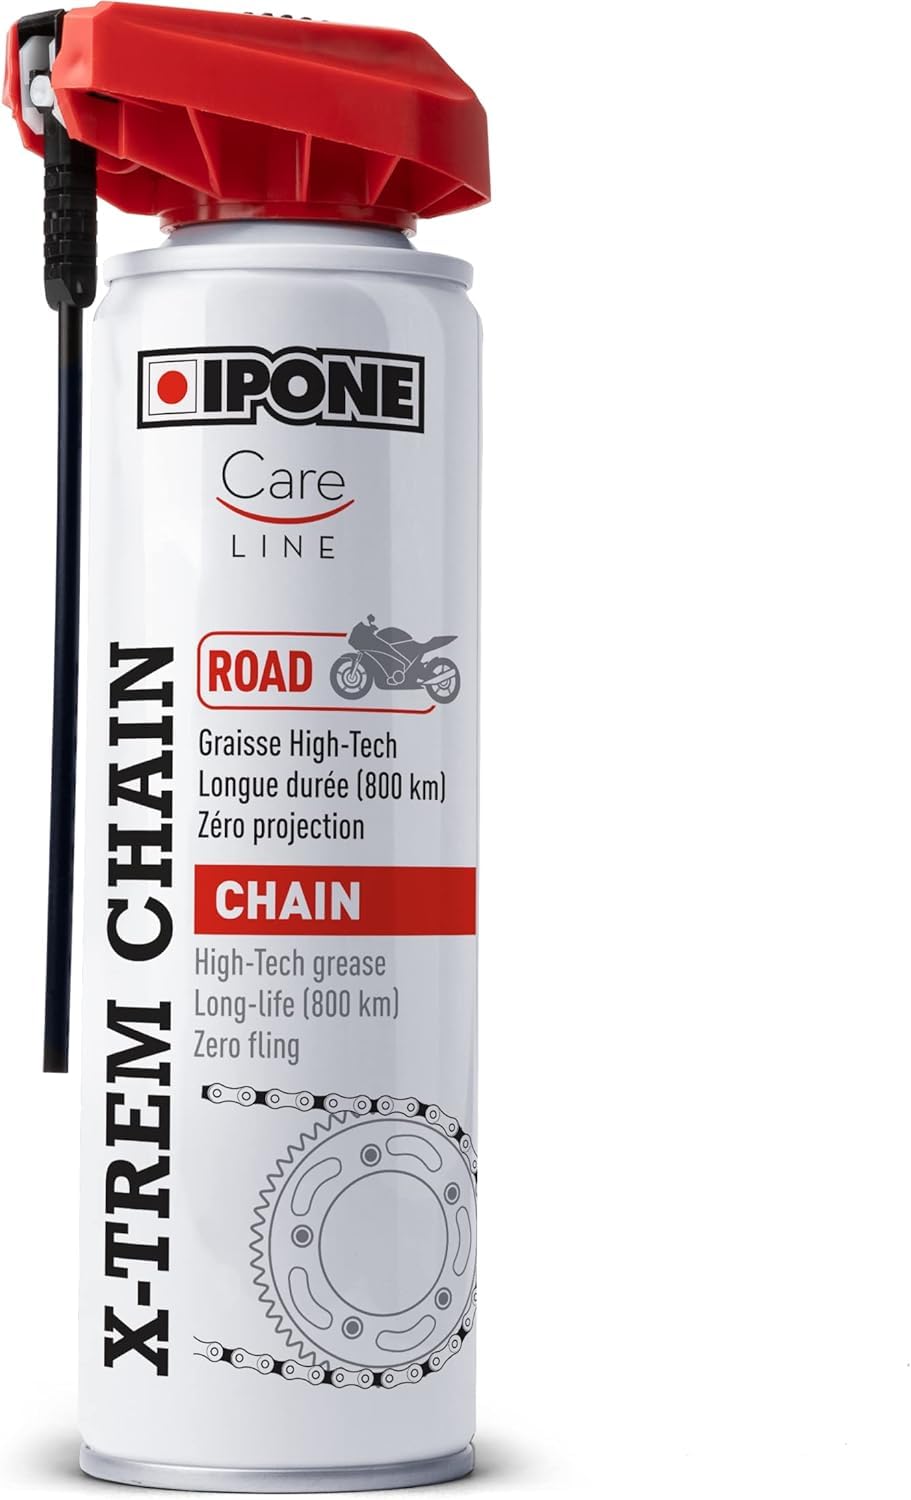 IPONE – X-Trem Chain Road Kettenspray für Straßenmotorräder – Langanhaltender Schutz bis 800km – Flächendeckende Zerstäubung – 250ml Sprühflasche mit Spezial-Zerstäuberkopf von Ipone